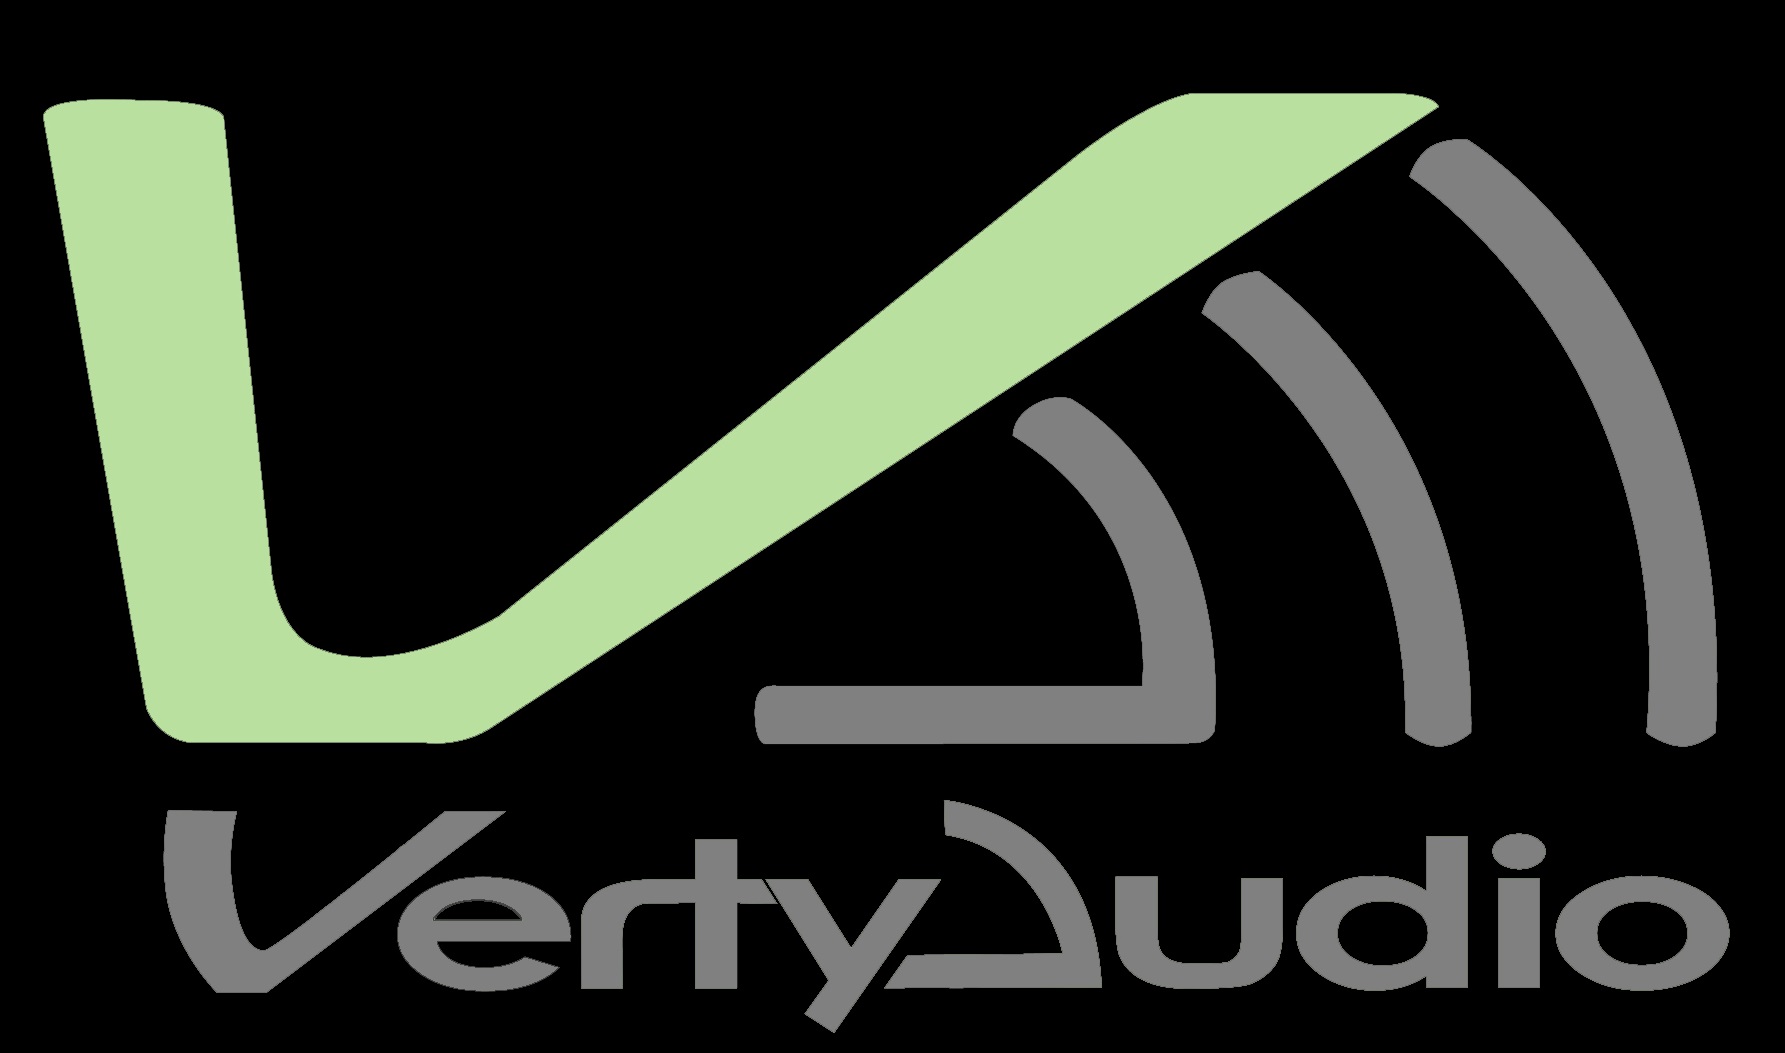 Verty Audio